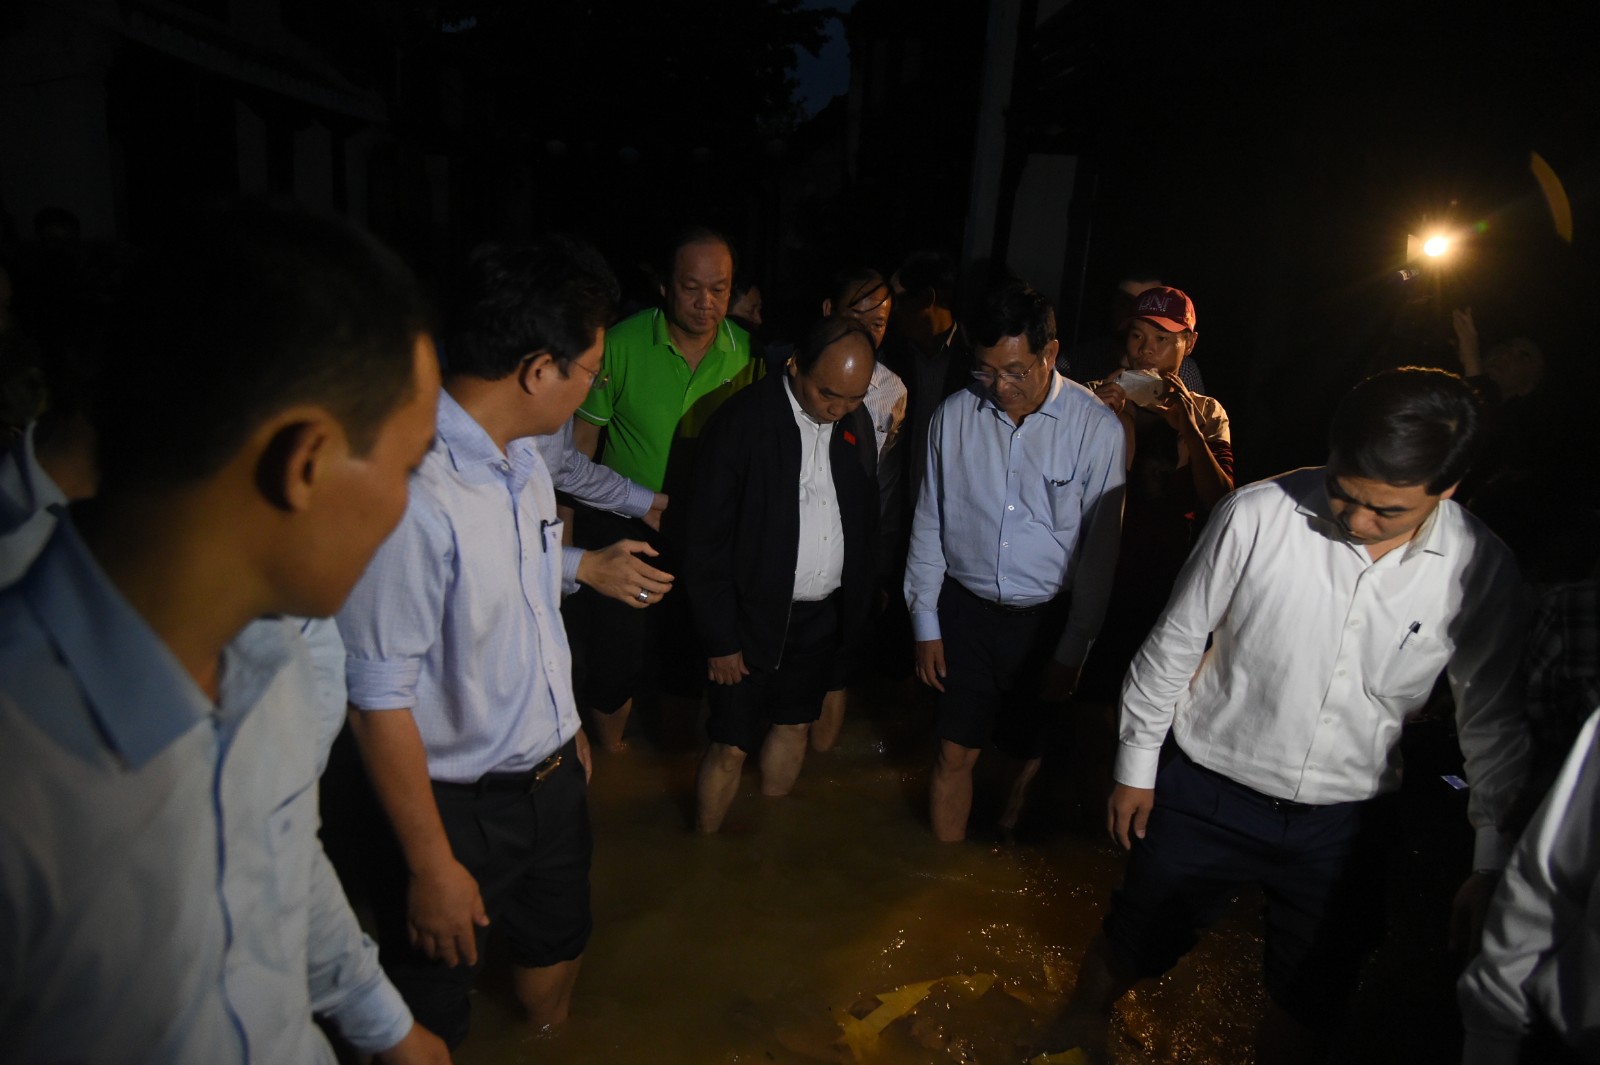  Chiều 7/11, Thủ tướng Nguyễn Xuân Phúc đã đến phố cổ Hội An (Quảng Nam) để kiểm tra công tác khắc phục hậu quả bão số 12. Ảnh: VGP